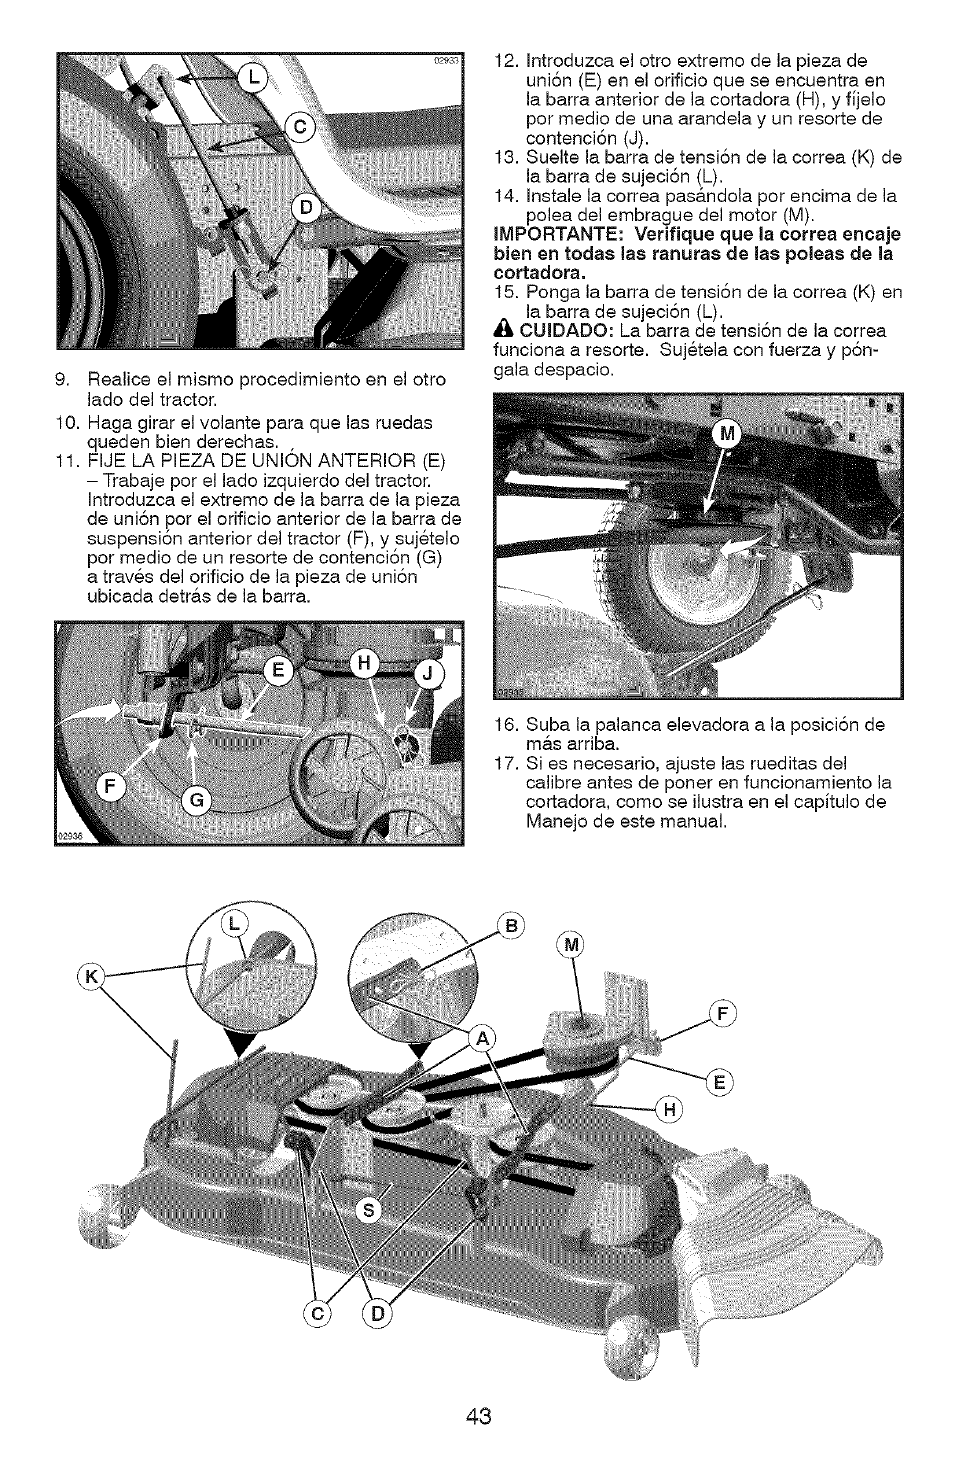 Craftsman YS 4500 917.28990 User Manual | Page 43 / 68 | Original mode